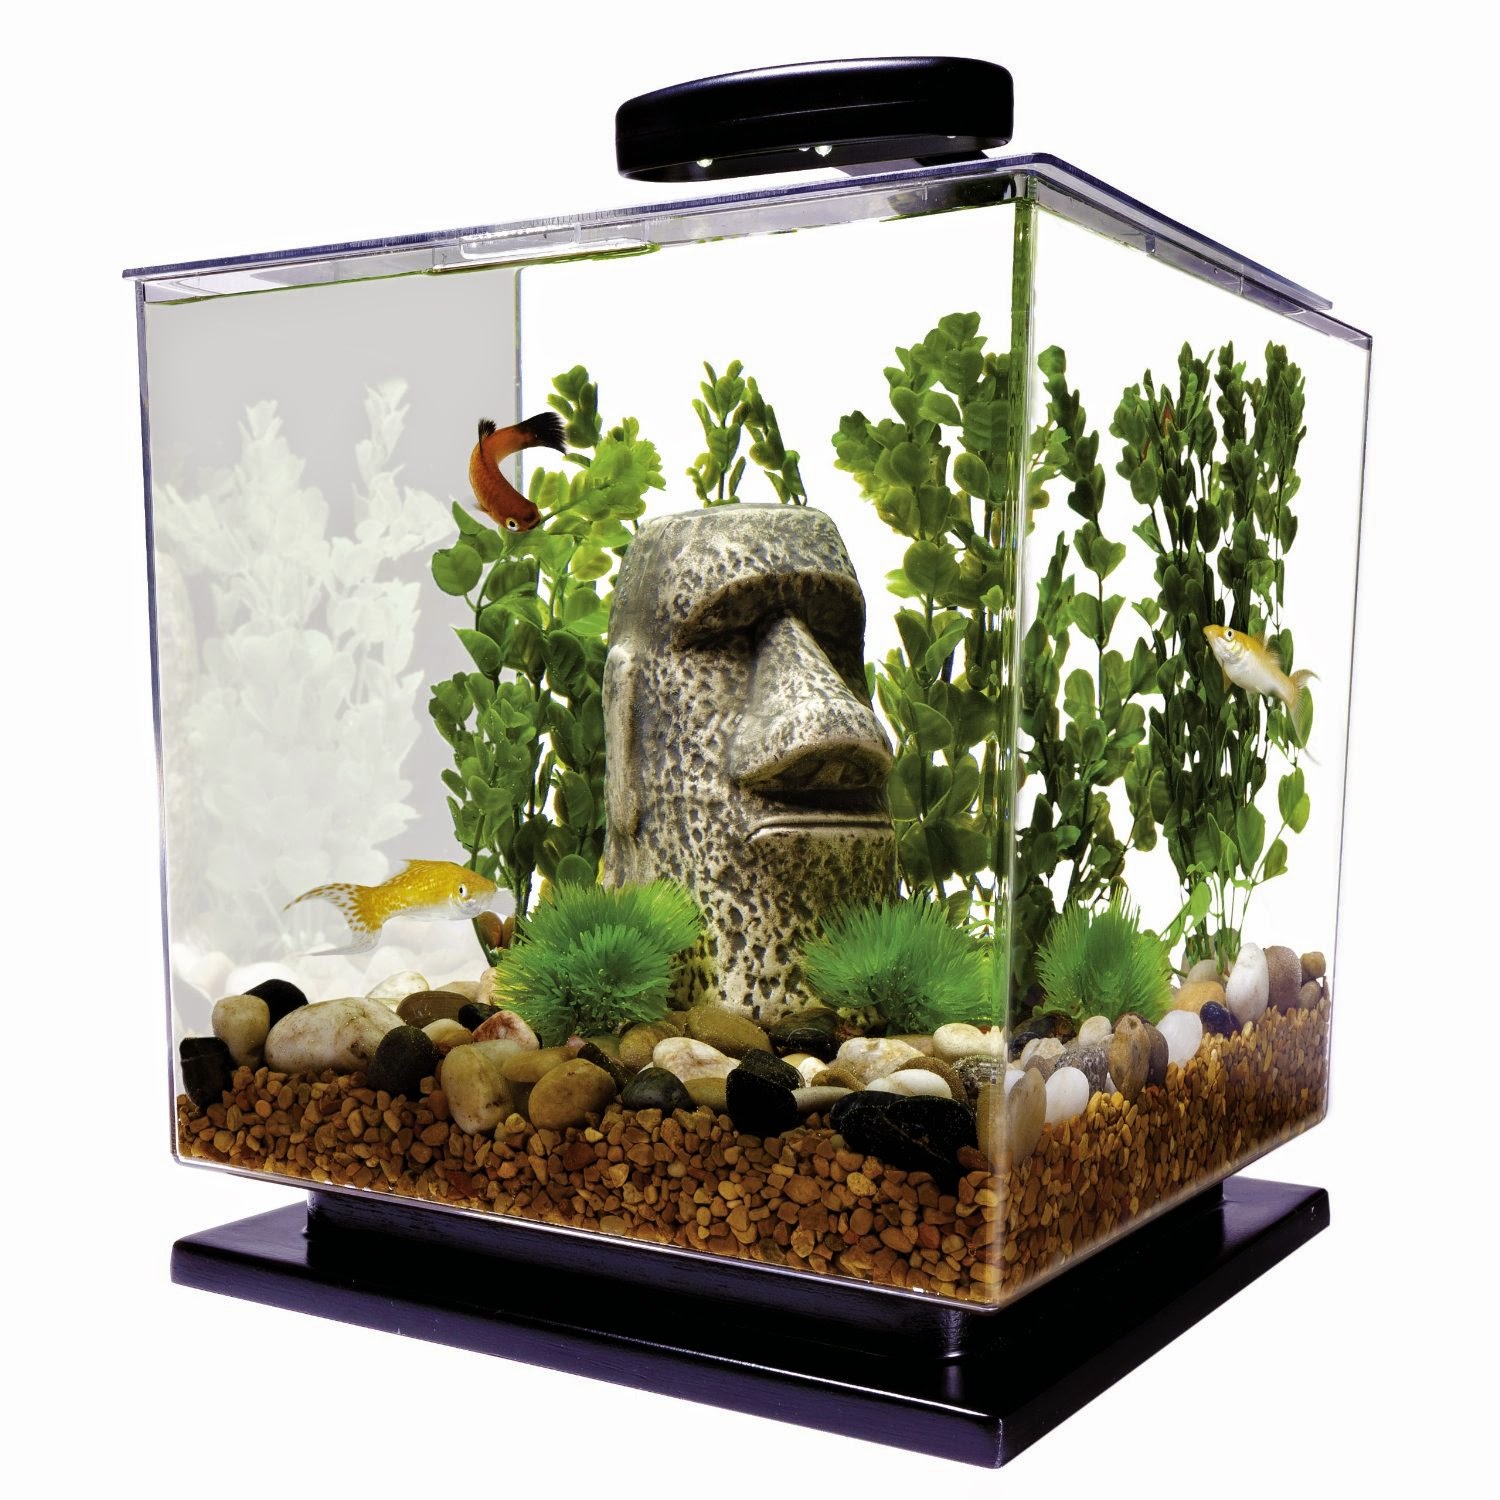 Best Betta Fish Tank Decorations 1pcs mini betta fish tank with small lights desk ornament aquarium